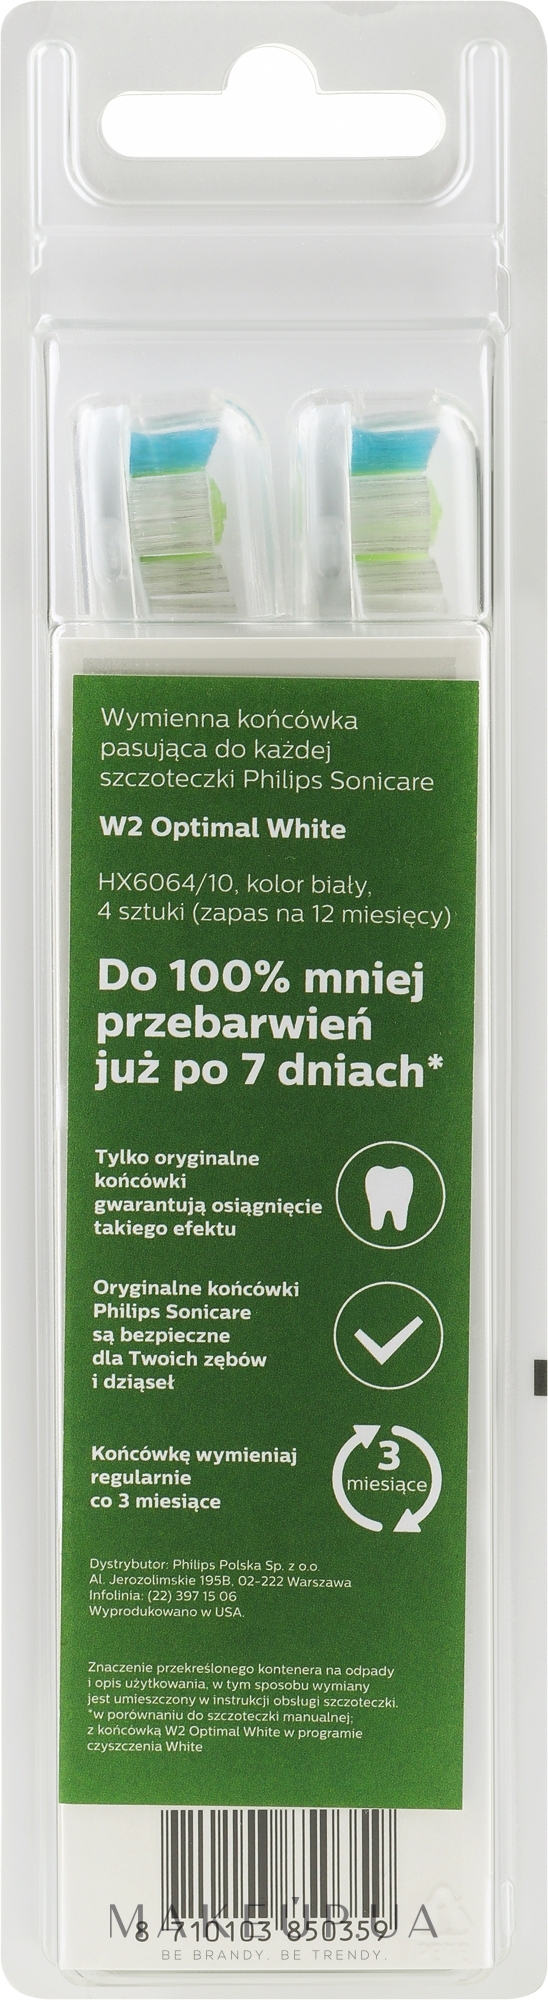 Насадки для зубной щетки HX6064/10 - Philips W Optimal White — фото 4шт